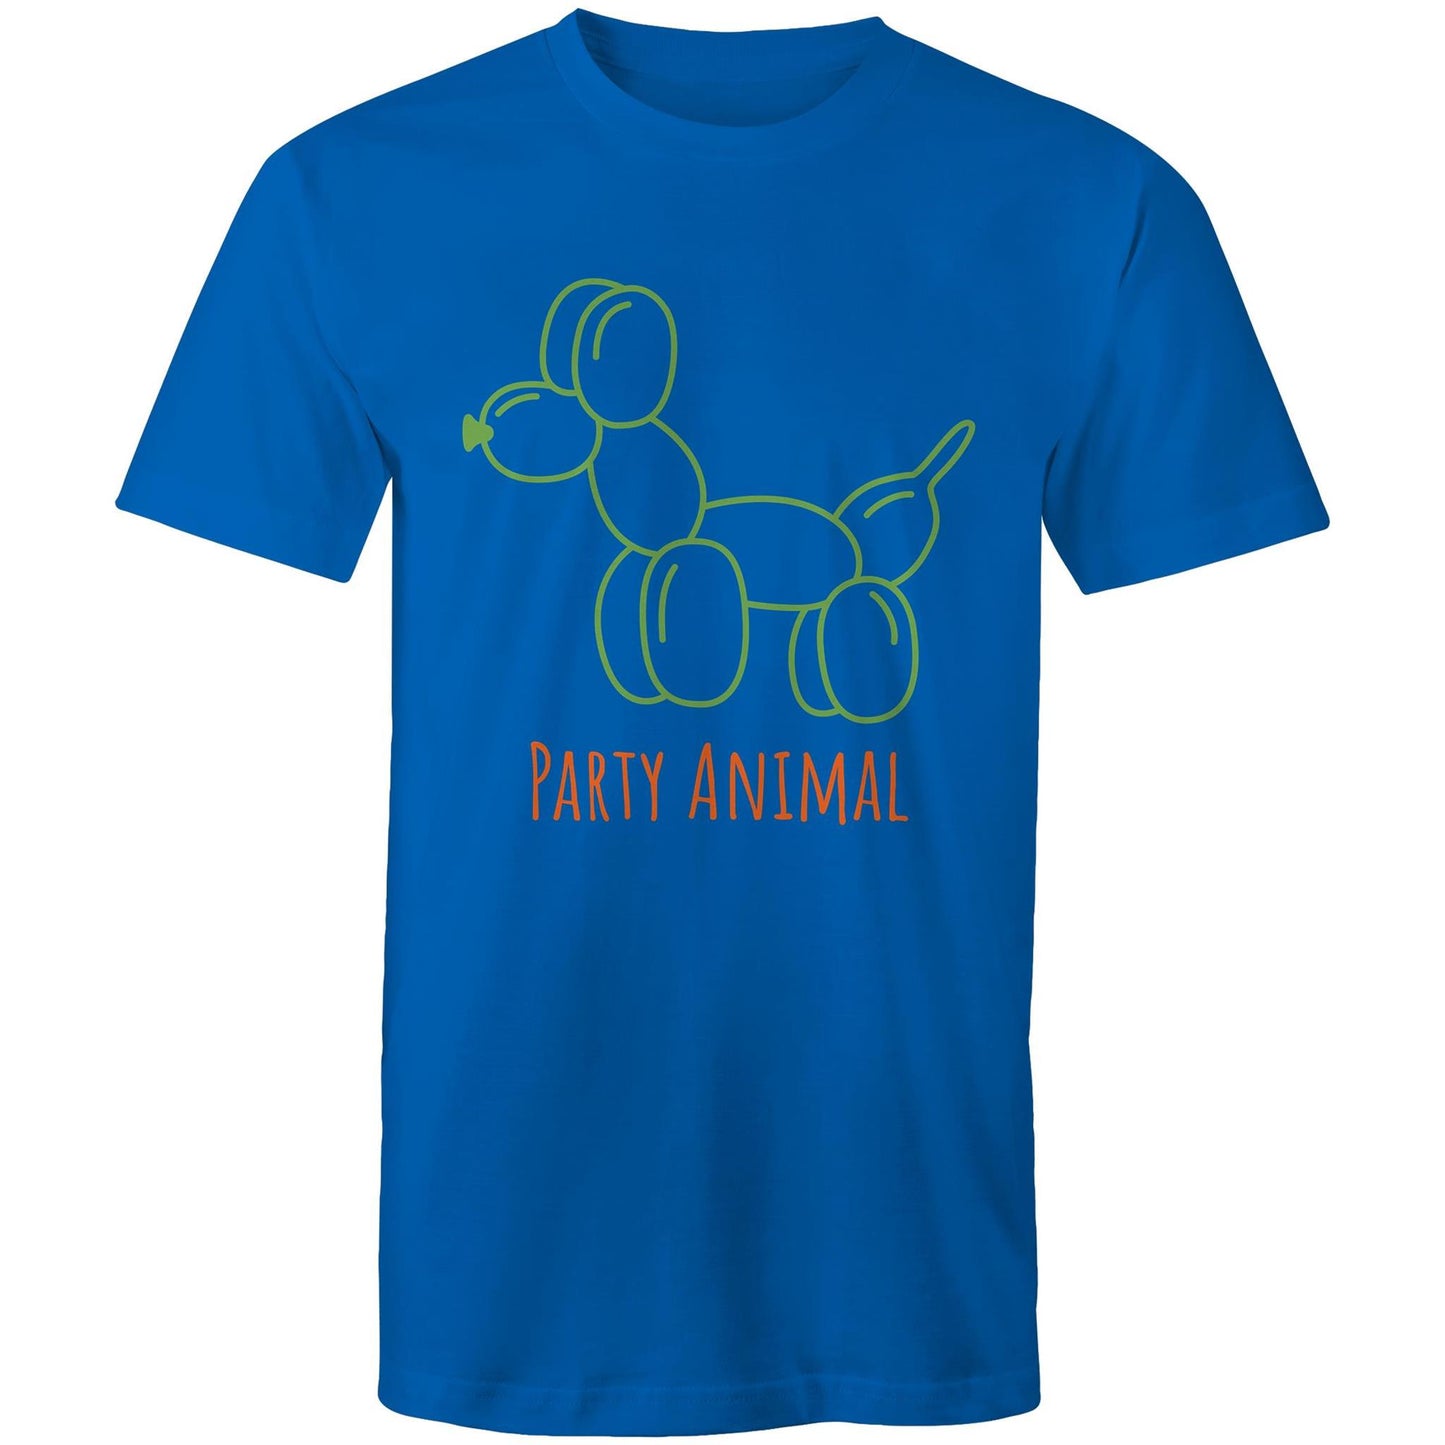 Party Animal - Mens T-Shirt Bright Royal Mens T-shirt animal Funny Mens